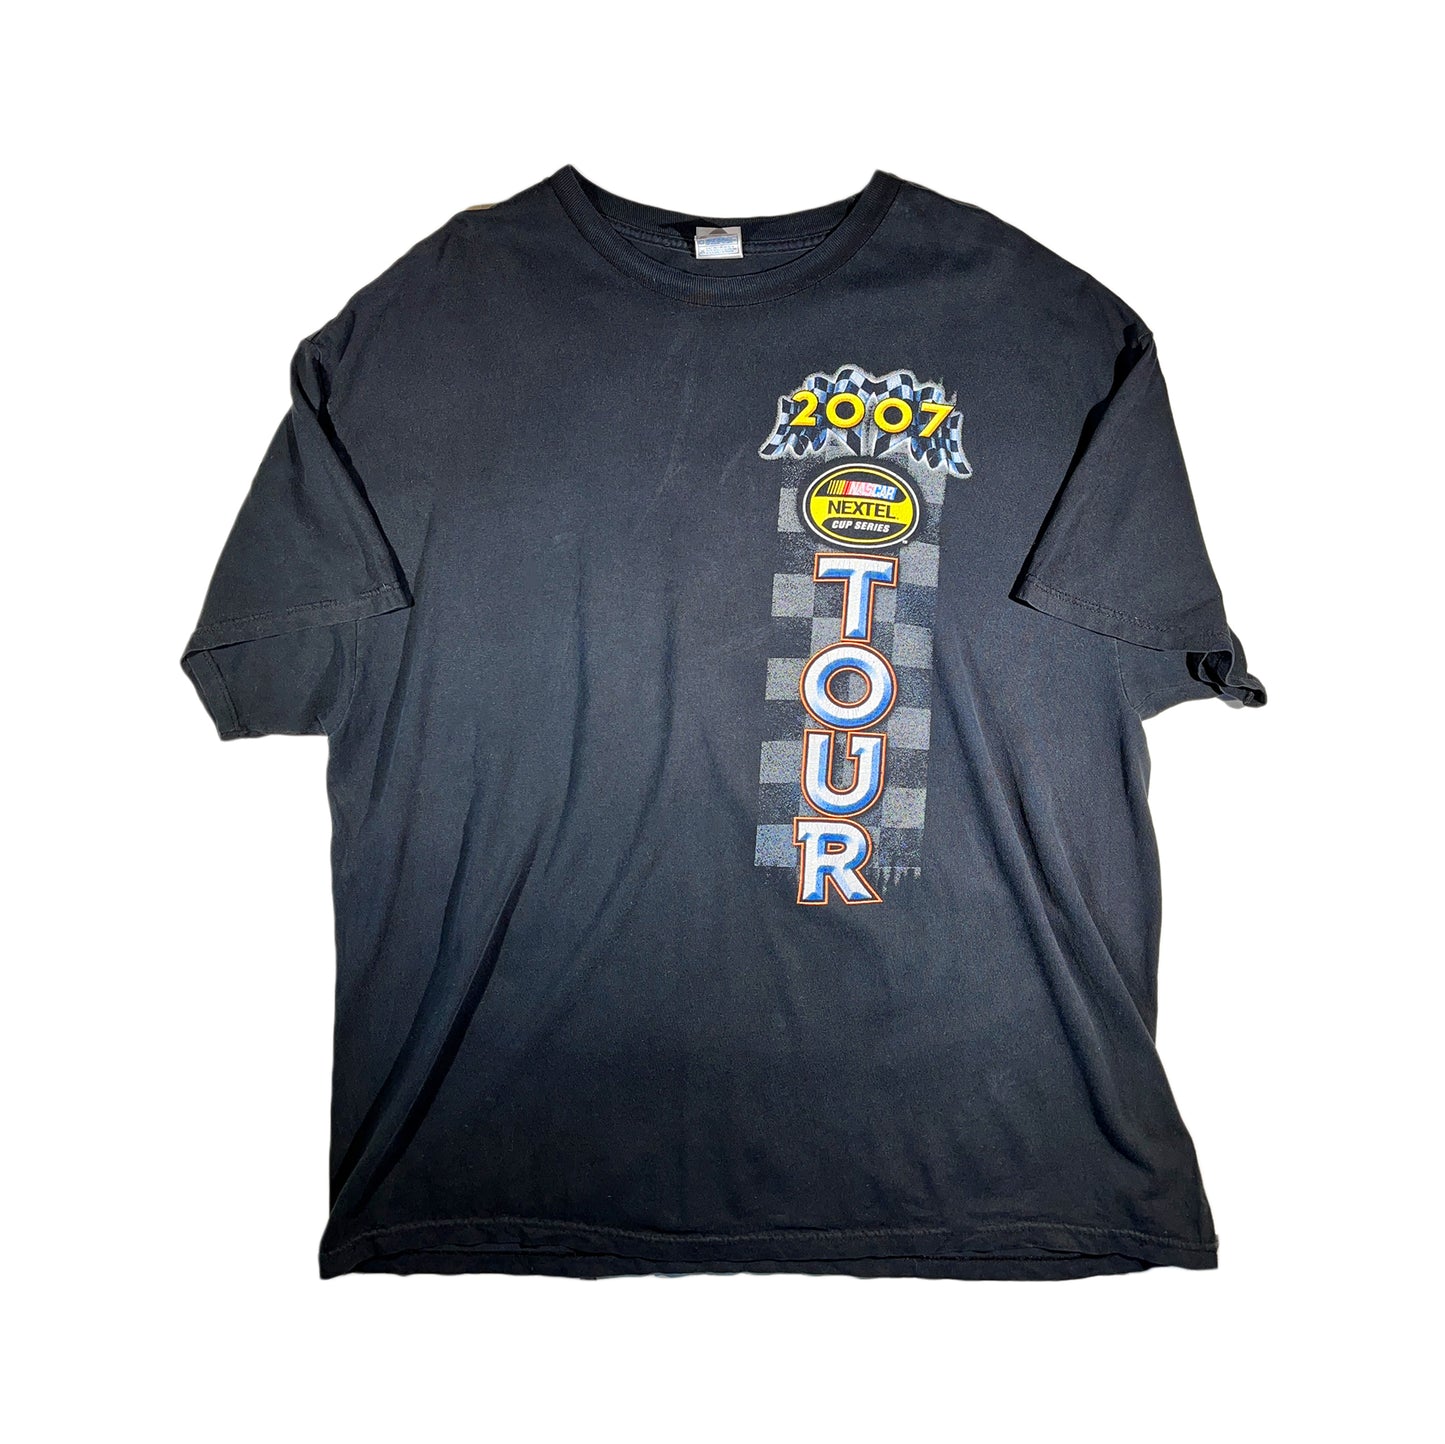 Vintage Car T-Shirt Nascar Nextel Cup 2007 Tour